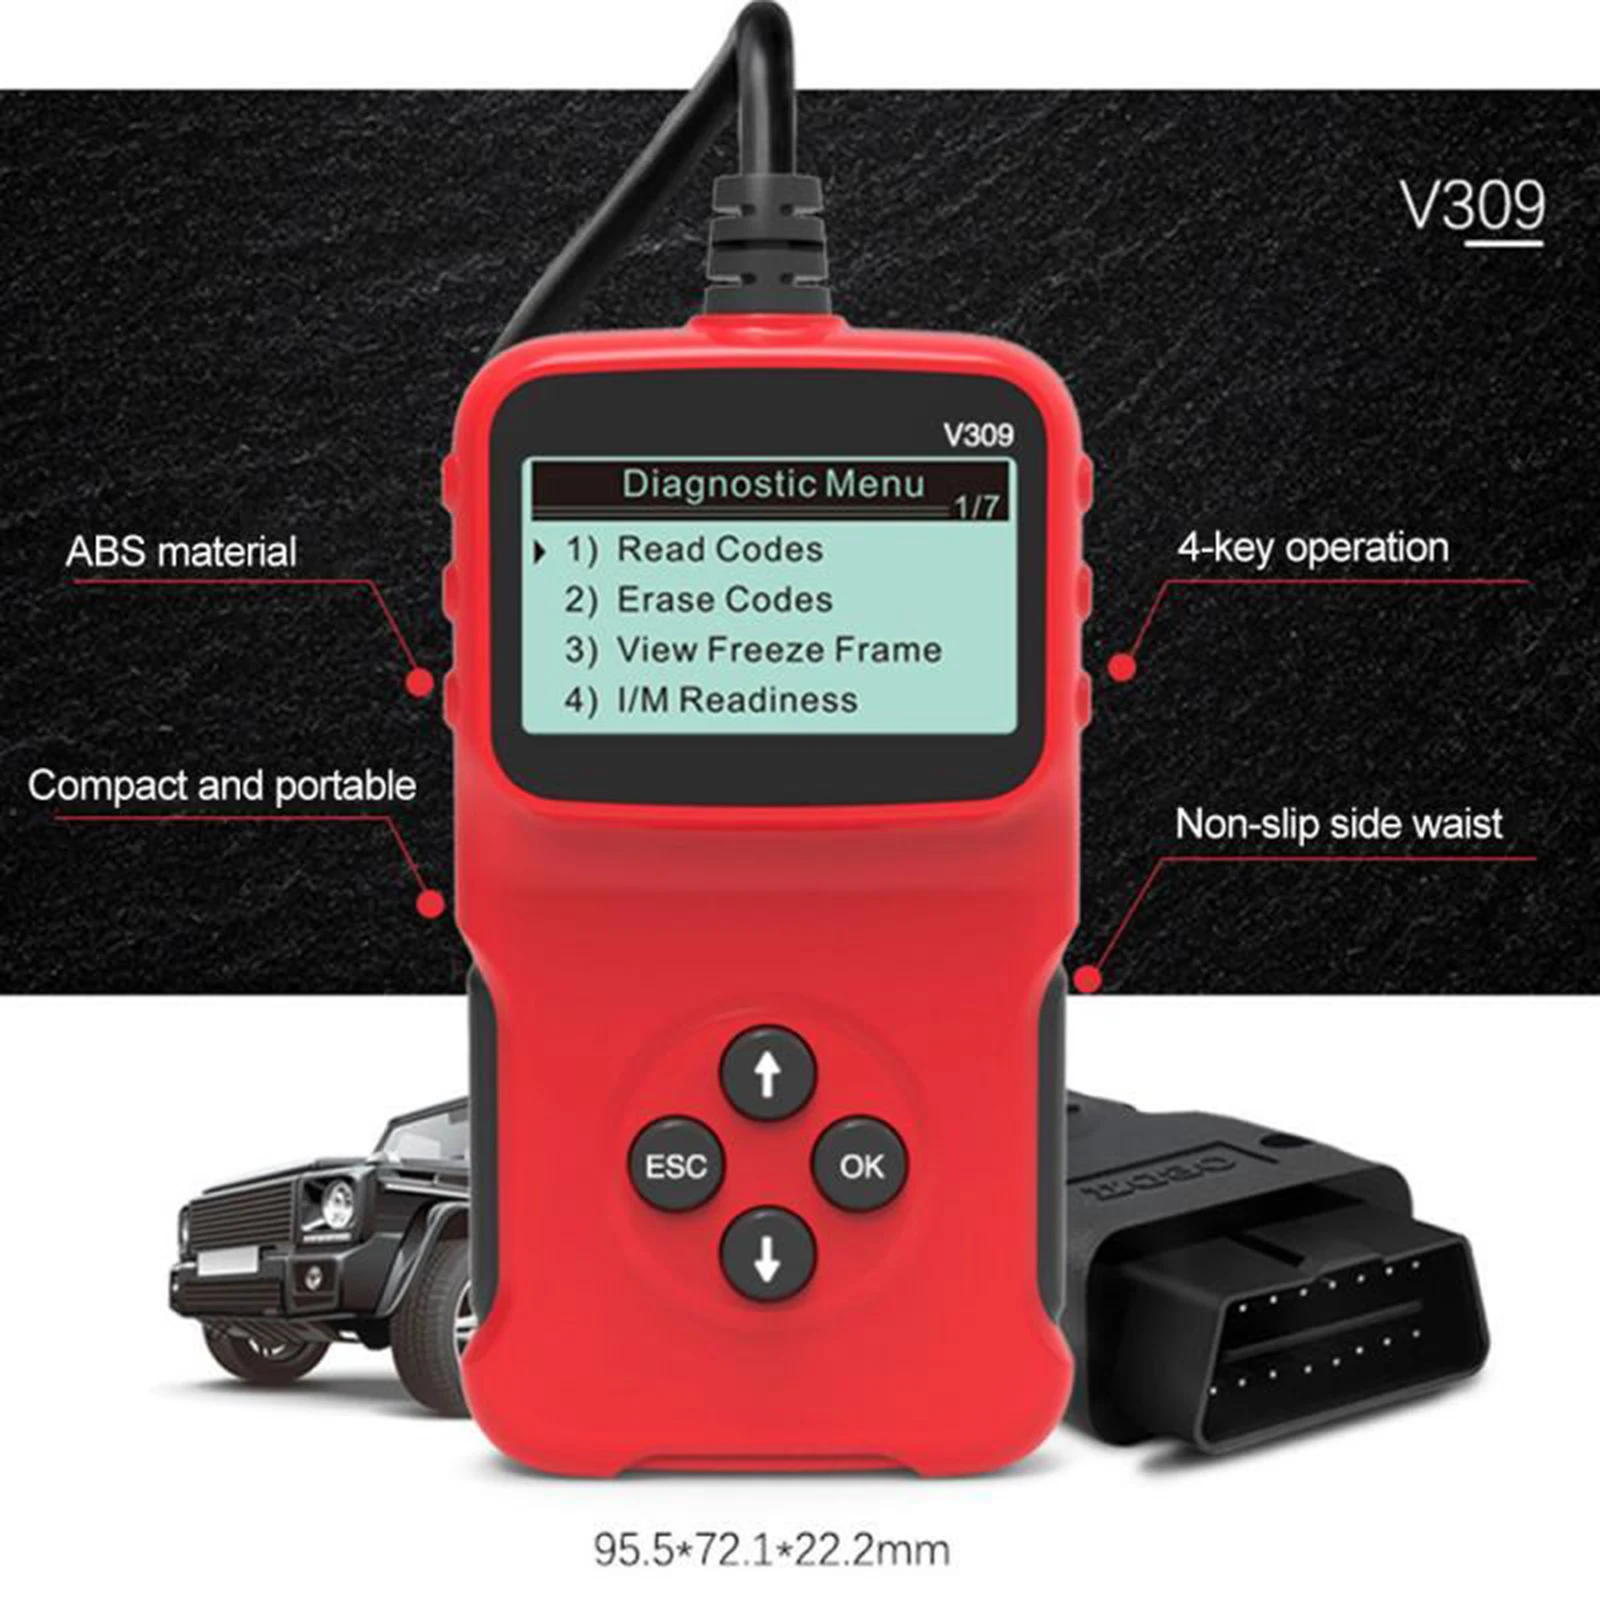 V309 Automobile Diagnostic Scanner Code Reader OBD Code Reader Car Check